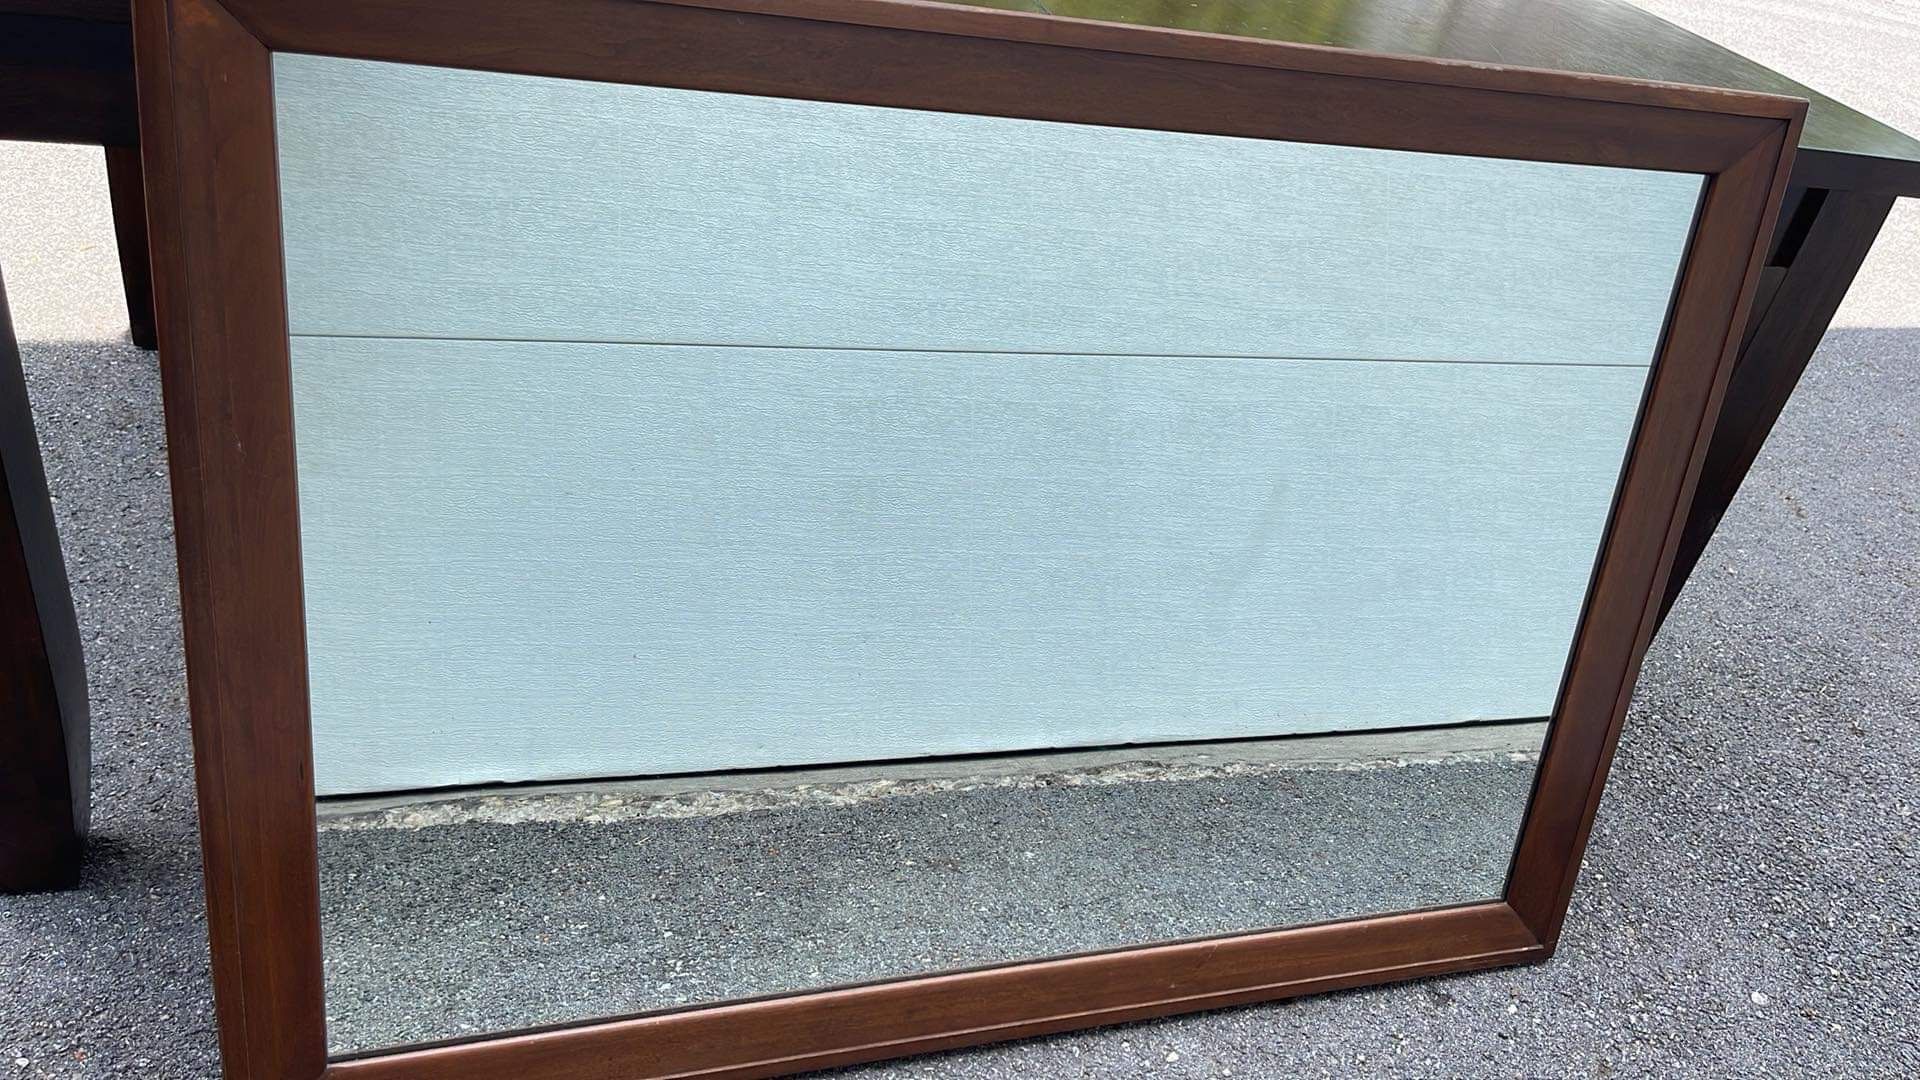 Vintage solid wood frame mirror 32”x46”